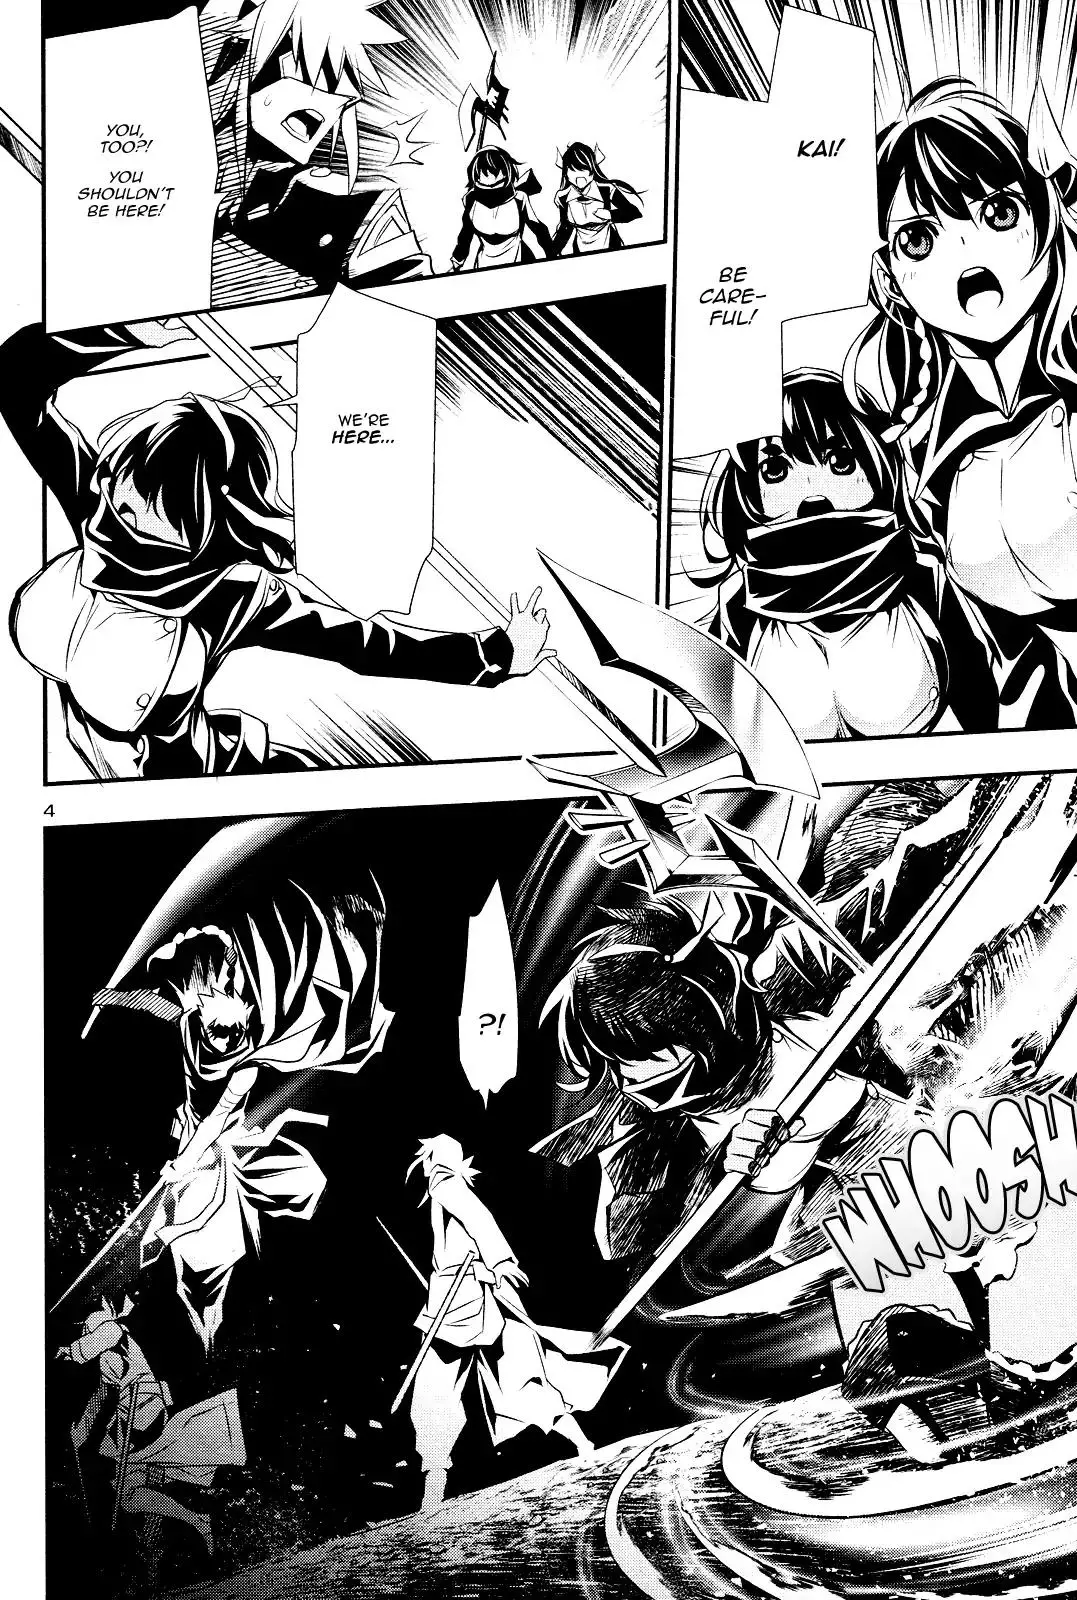 Shinju no Nectar - 23 page 2